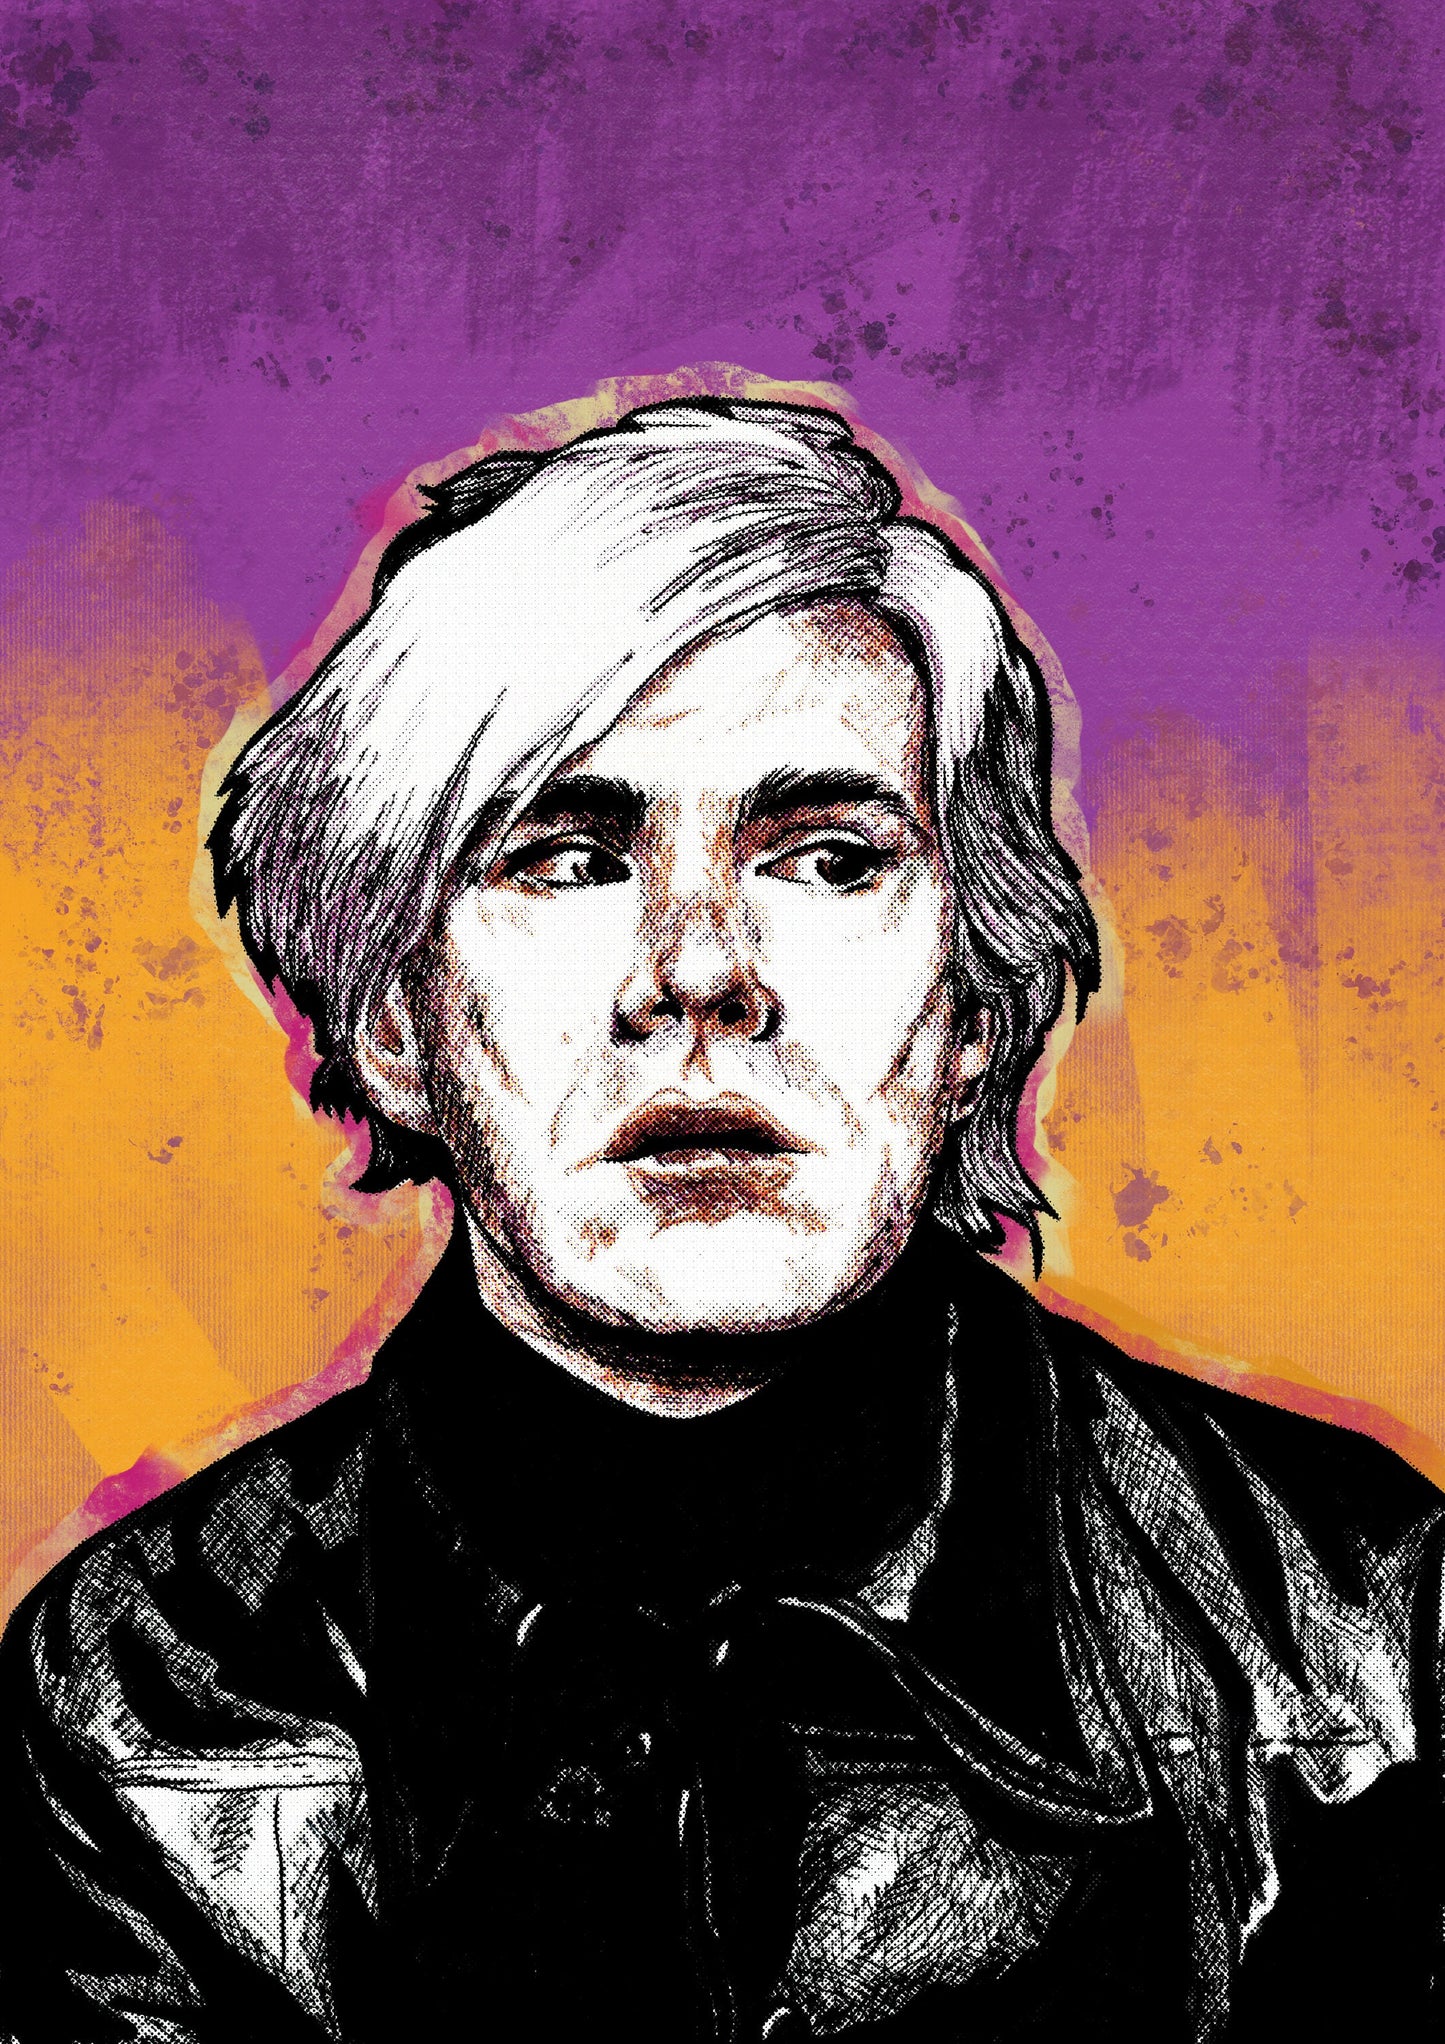 Andy Warhol portrait art print, unframed, Warhol Poster, portrait of Andy Warhol, Warhol Art Poster, Home Decor, Warhol pop art, Wall Art